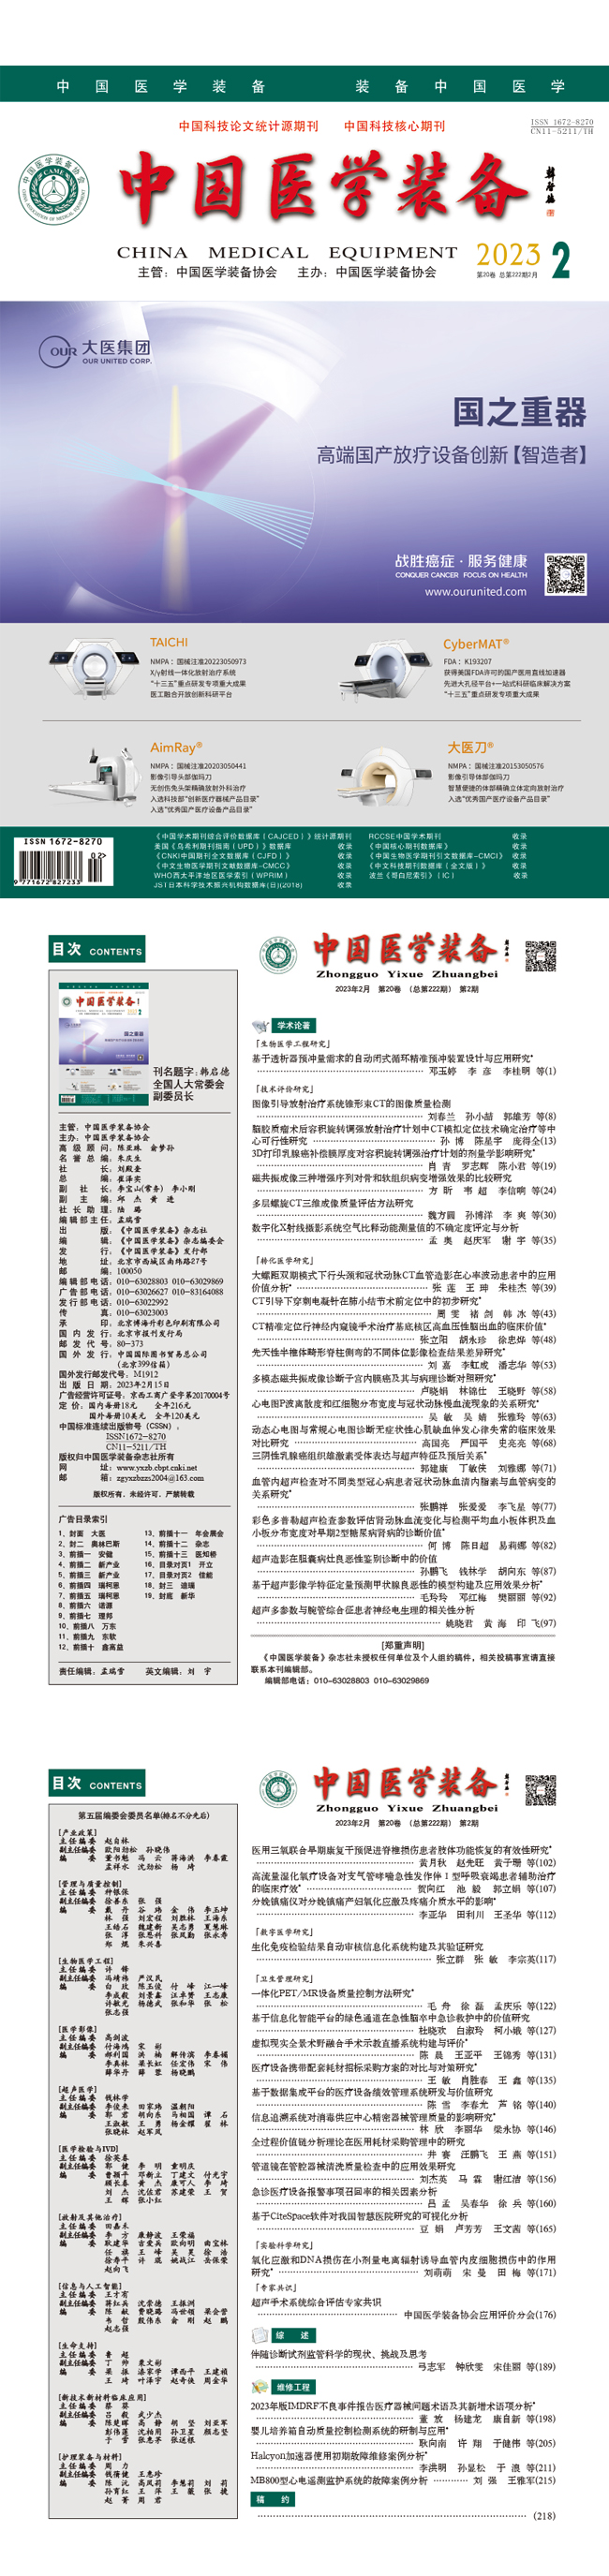 《中国医学装备》2023年2期出版(图1)